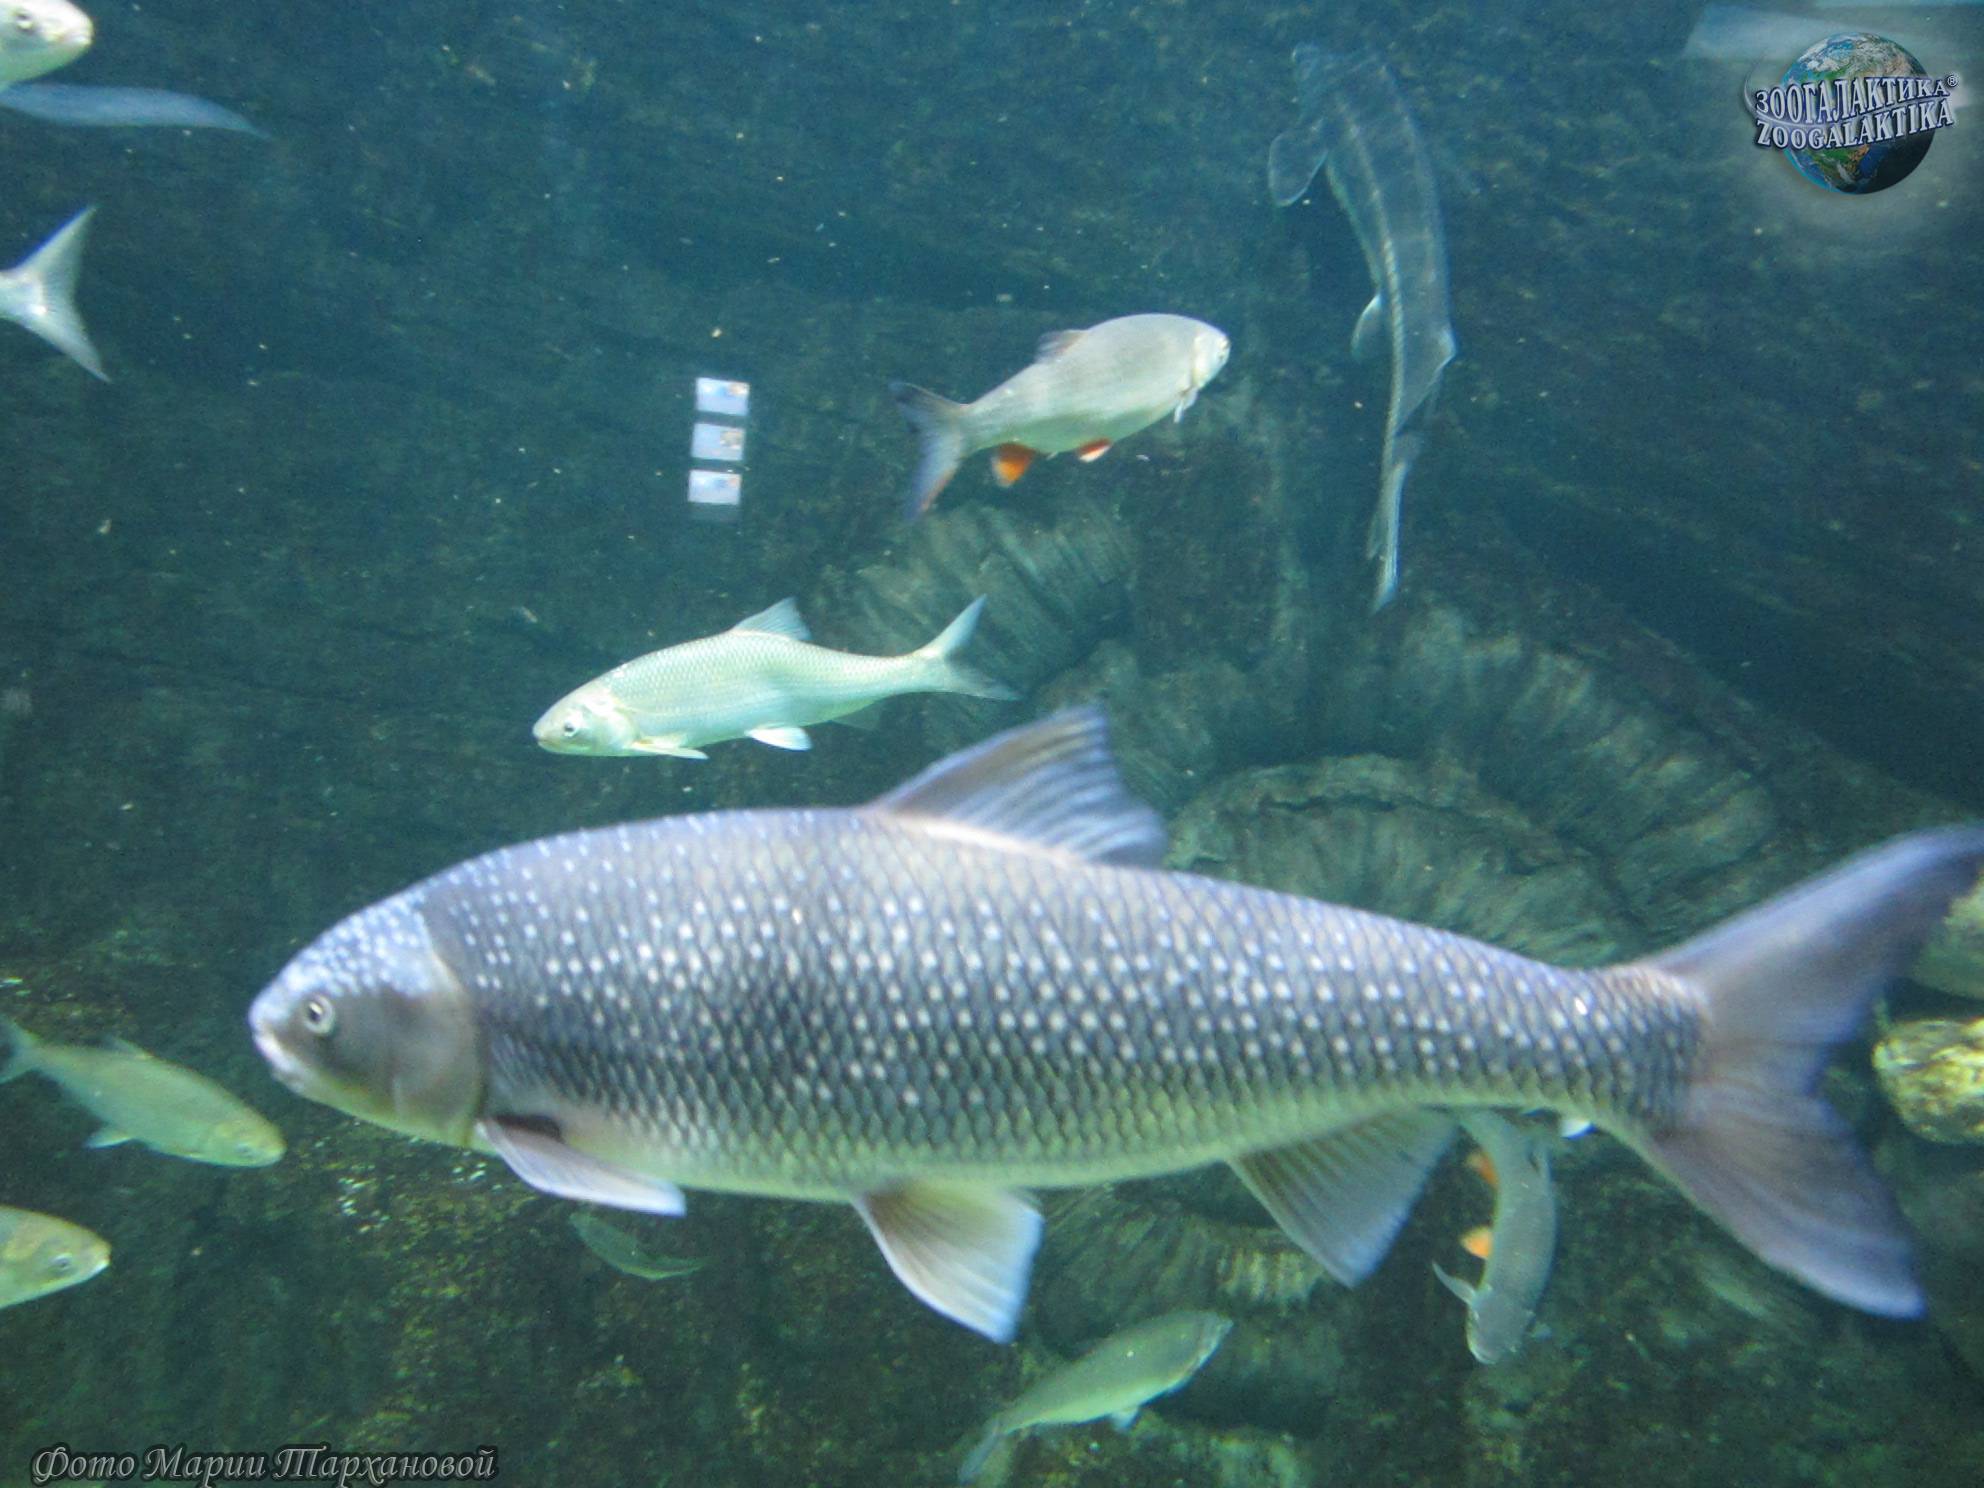 Рогозубообразные, или однолегочные рыбы (ceratodontiformes)